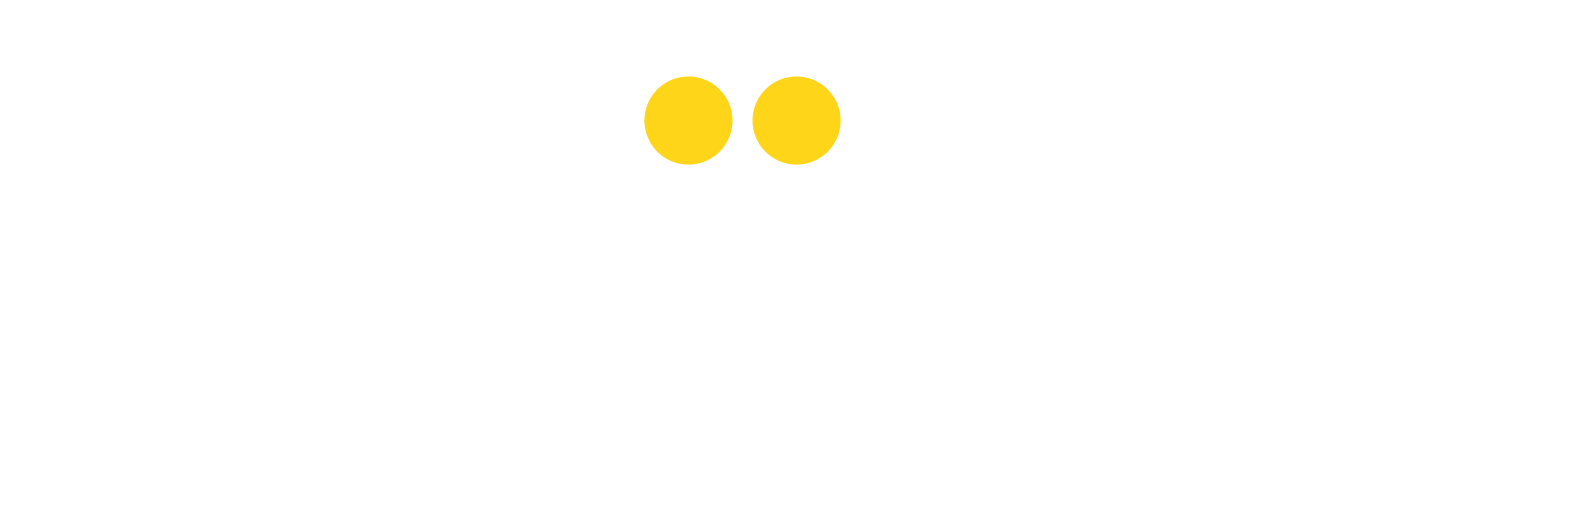 Logo Cariilmu